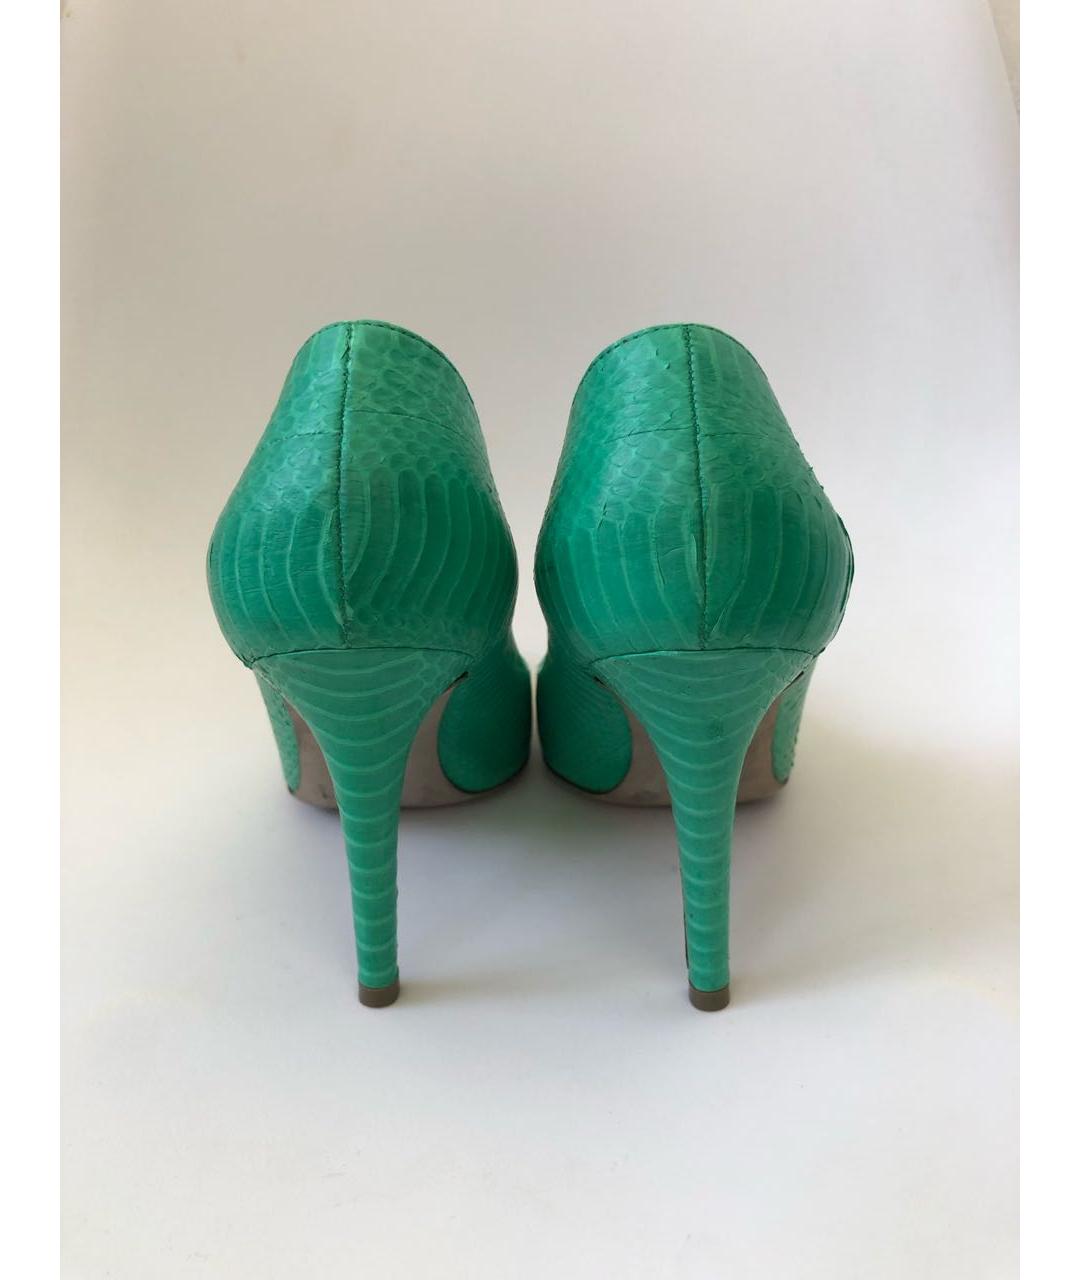 SERGIO ROSSI Зеленые туфли из экзотической кожи, фото 3